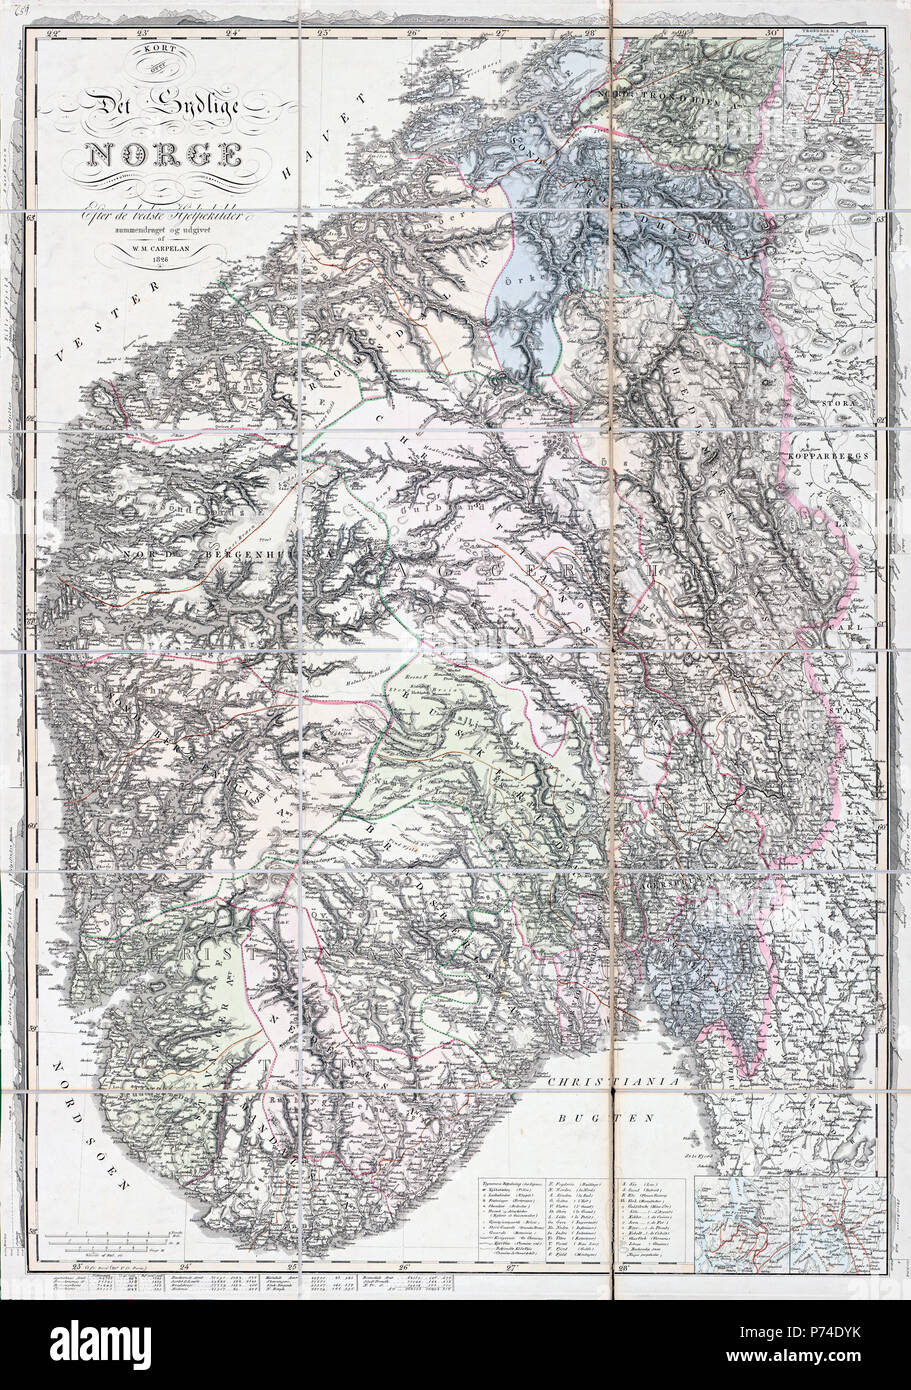 Carpelans kart sur det sydlige Norge, 1826 Banque D'Images